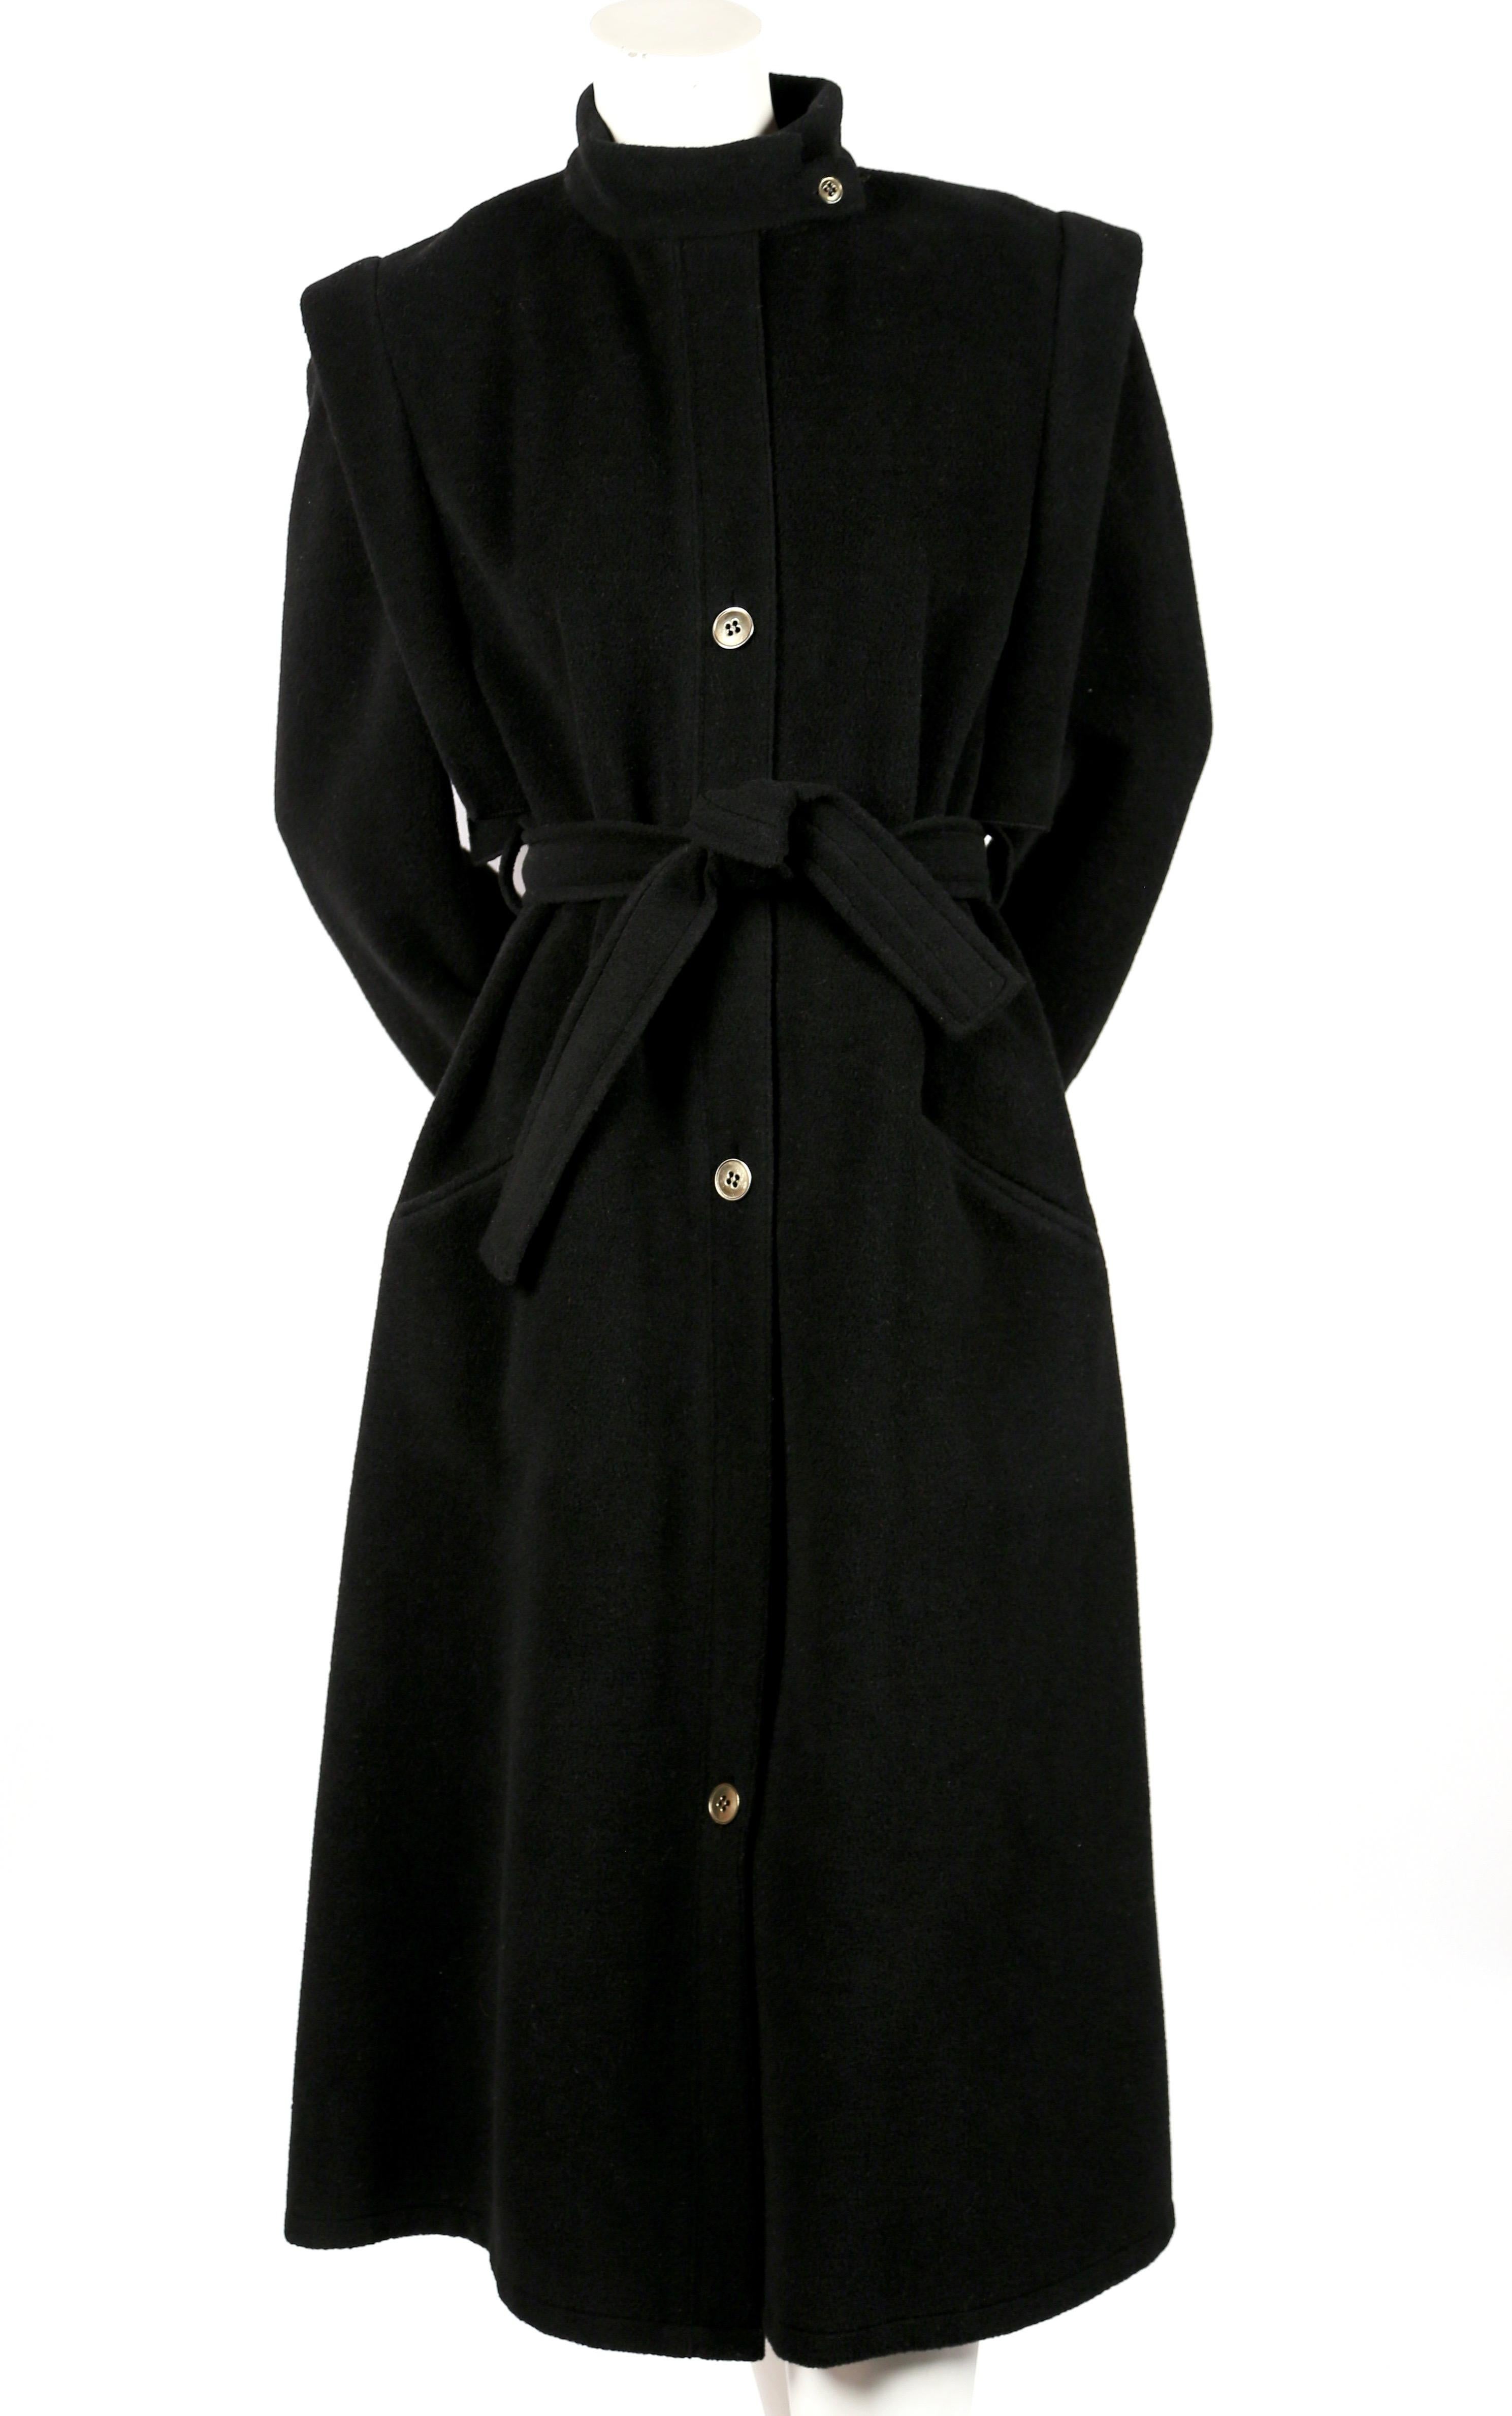 Manteau en laine noire à la forme unique, aux épaules structurées et aux boutons en métal, conçu par Sonia Rykiel pour Henri Bendel. Aucune taille n'est indiquée, mais il conviendrait à une taille 2-6 en fonction de la coupe. Pour référence, le